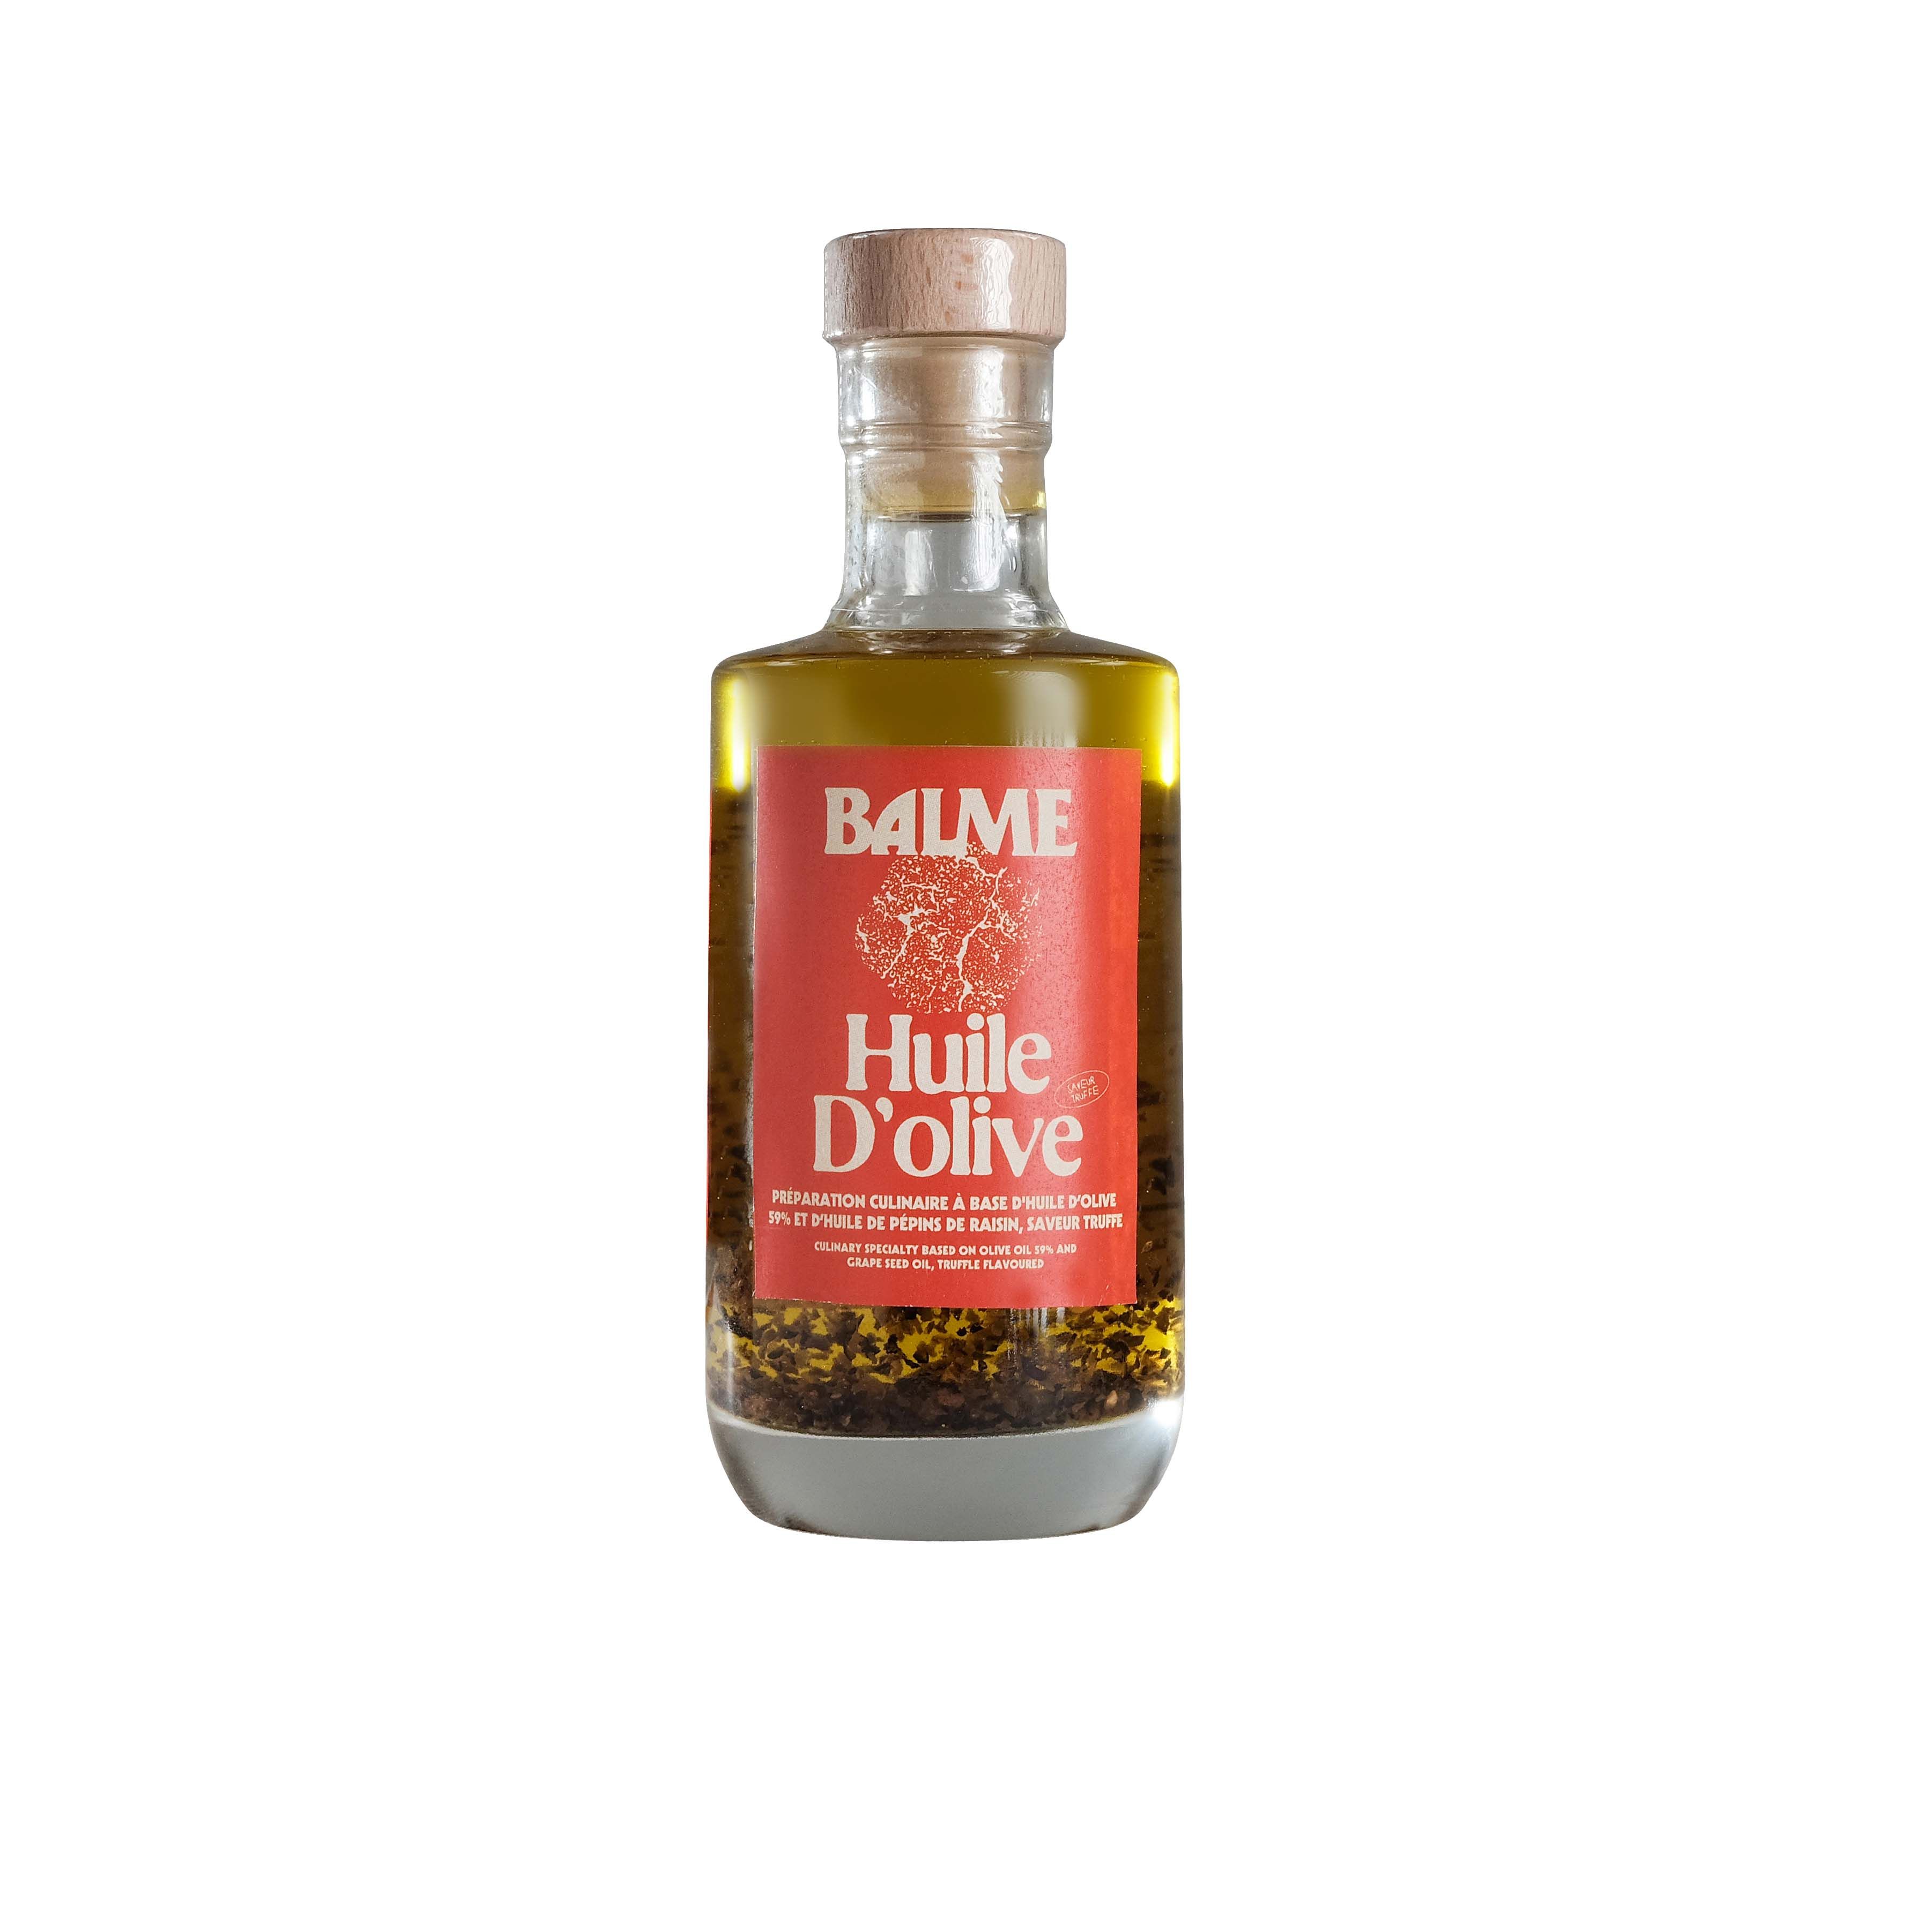 Huile d'olive au jus de Truffe noire (bouteille or)